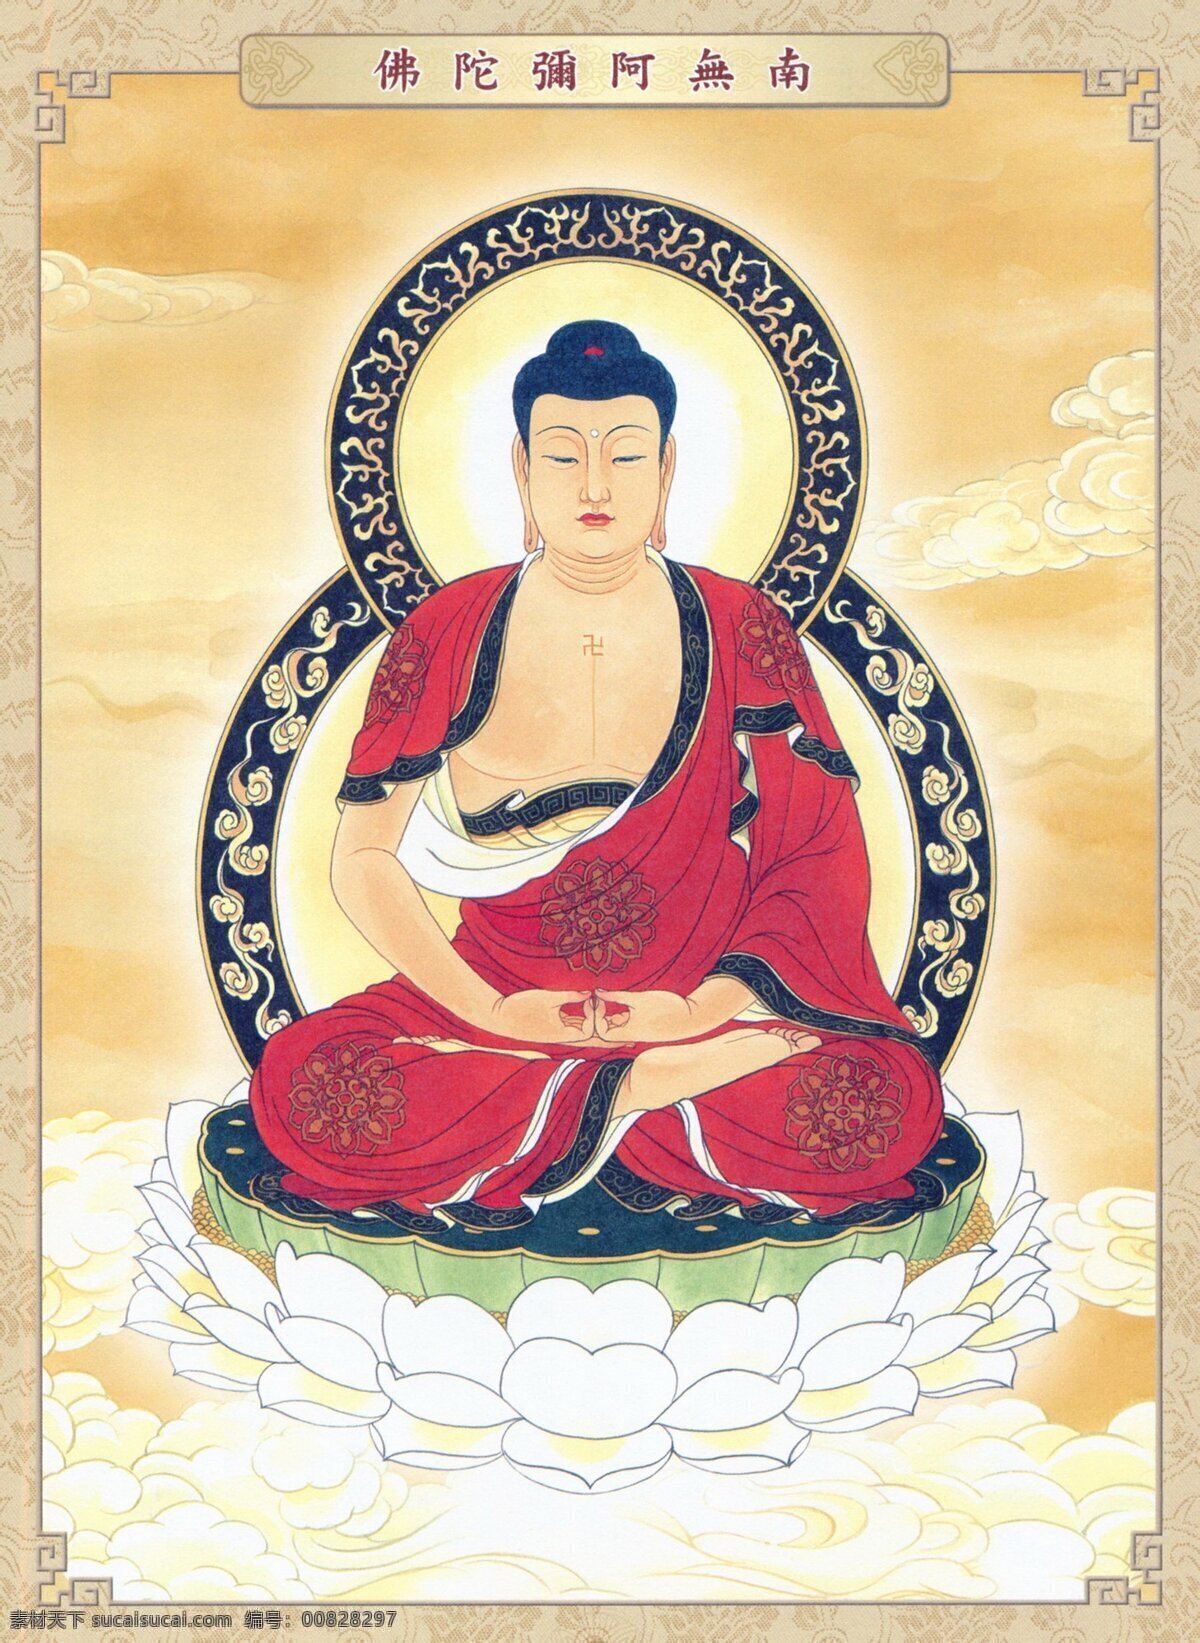 阿弥陀佛 坐姿佛 佛祖 如来佛 佛教 宗教艺术 汉传佛教 文化艺术 宗教信仰